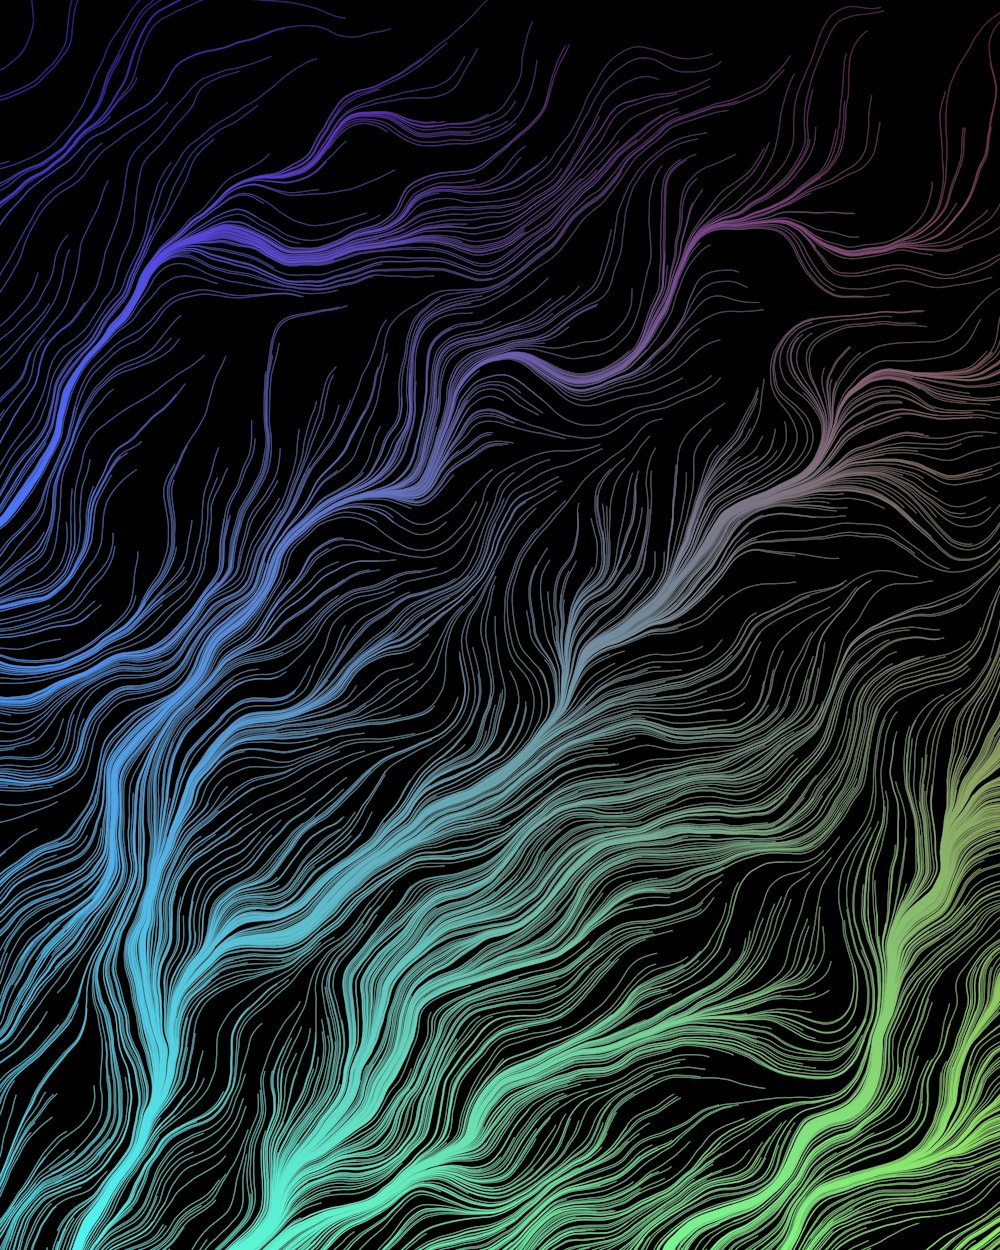 Un fondo abstracto colorido con líneas onduladas